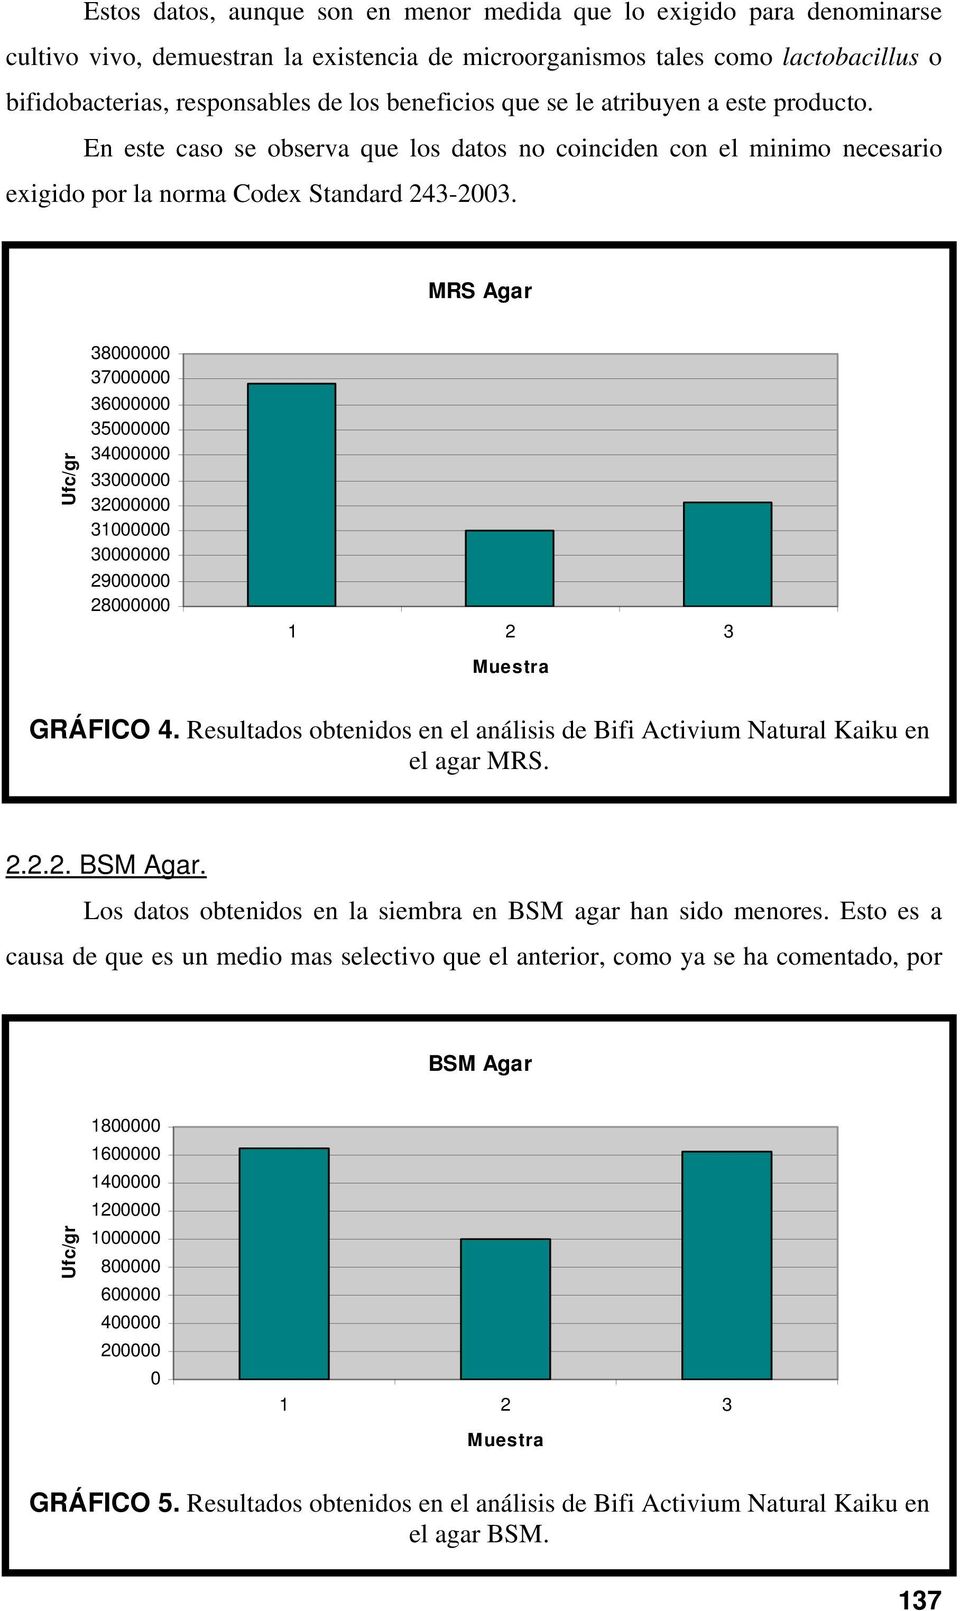 MRS Agar 38 37 36 35 34 33 32 31 3 29 28 GRÁFICO 4. Resultados obtenidos en el análisis de Bifi Activium Natural Kaiku en el agar MRS. 2.2.2. BSM Agar.